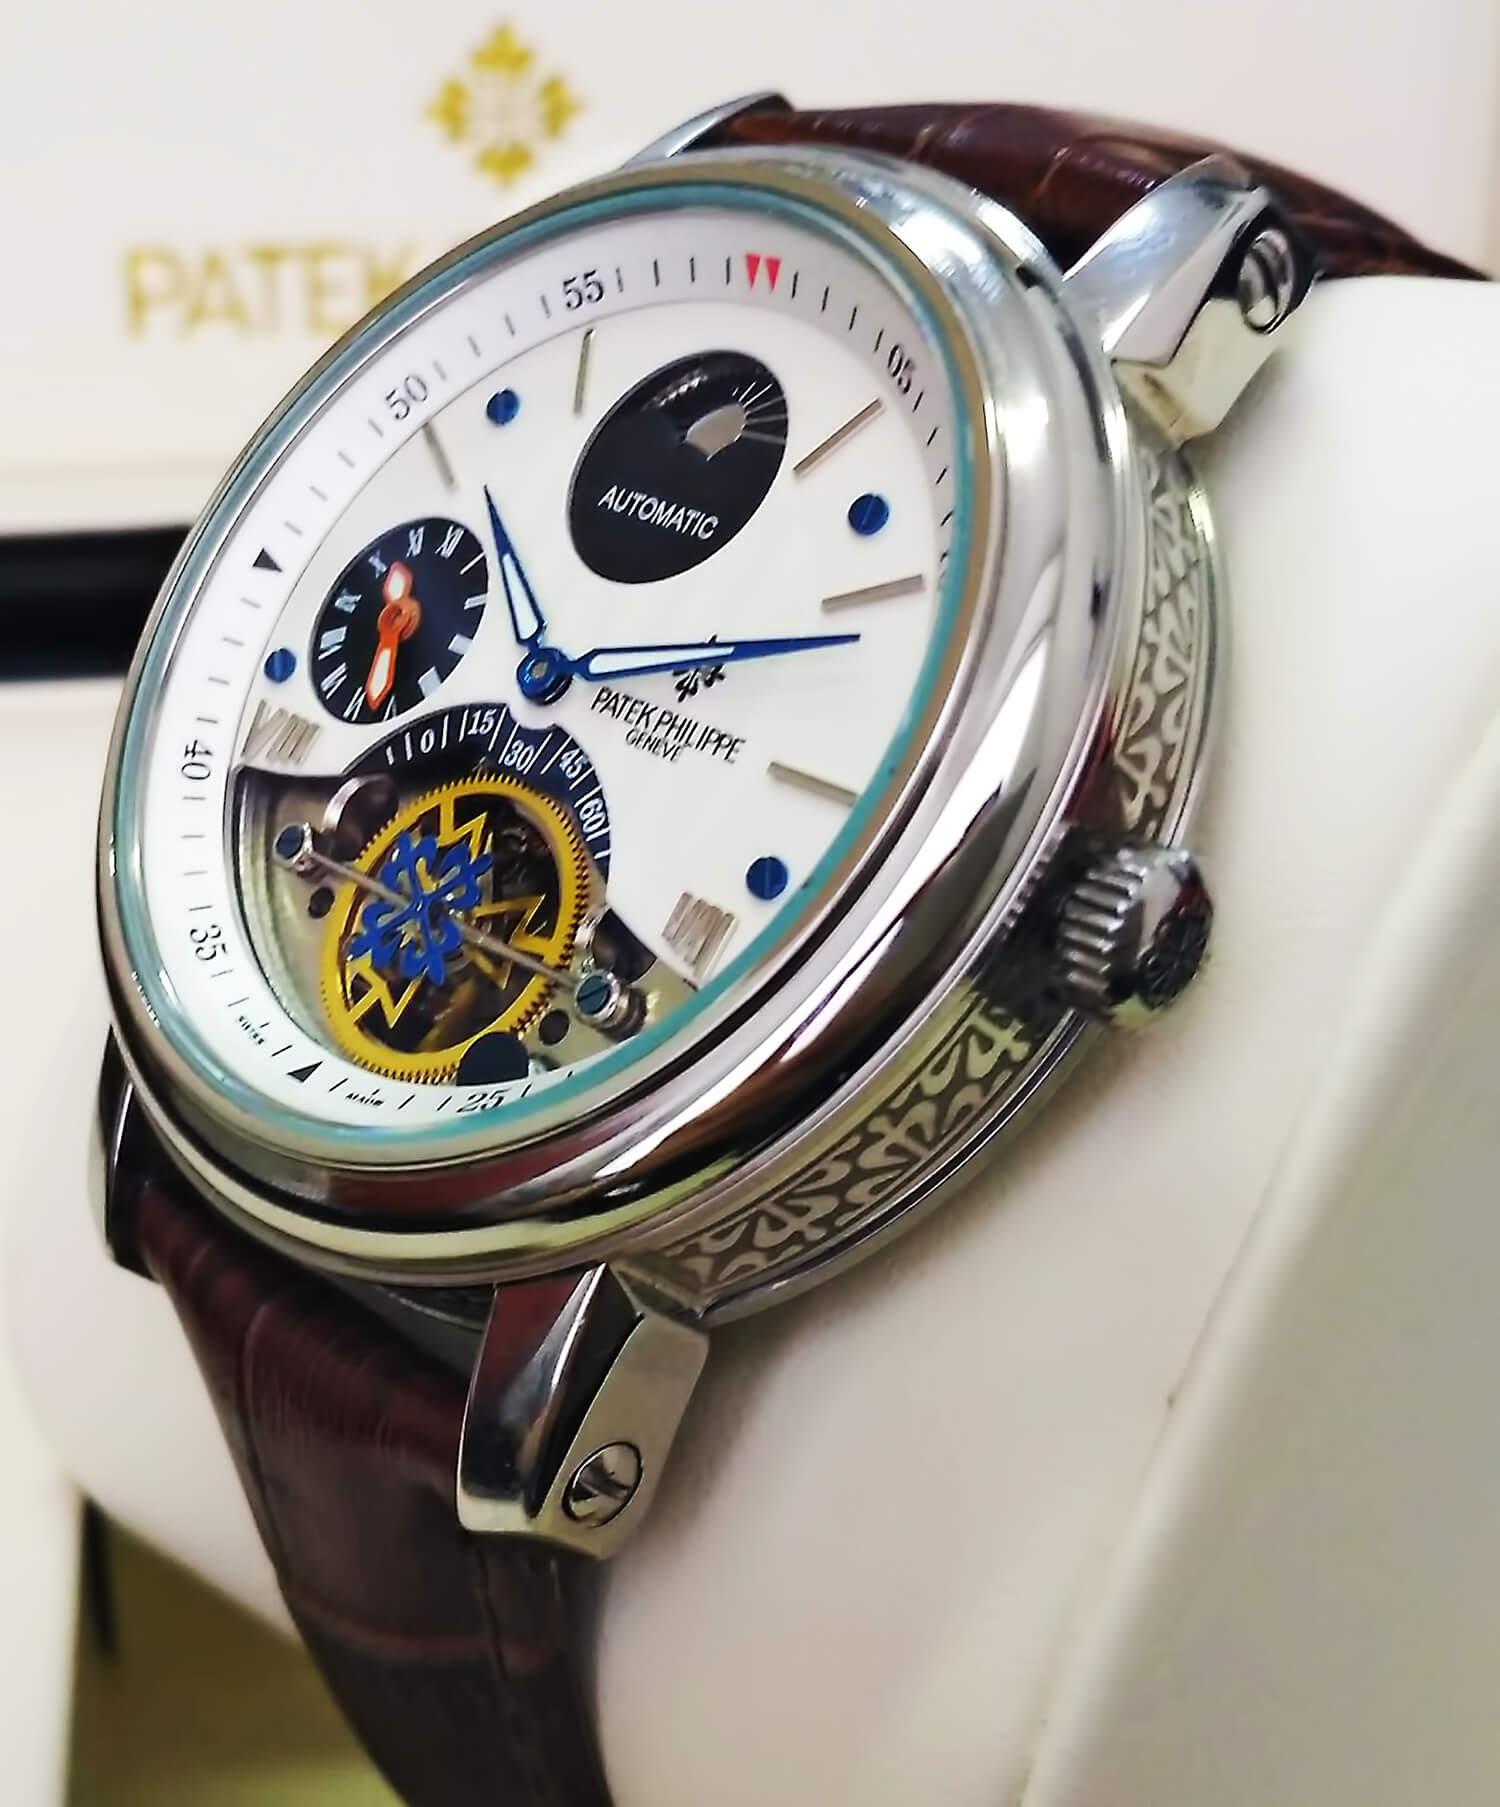 Боковая поверхность часов покрыта гравировкой в виде ордена Калатравы, являющегося логотипом бренда Патек Филипп